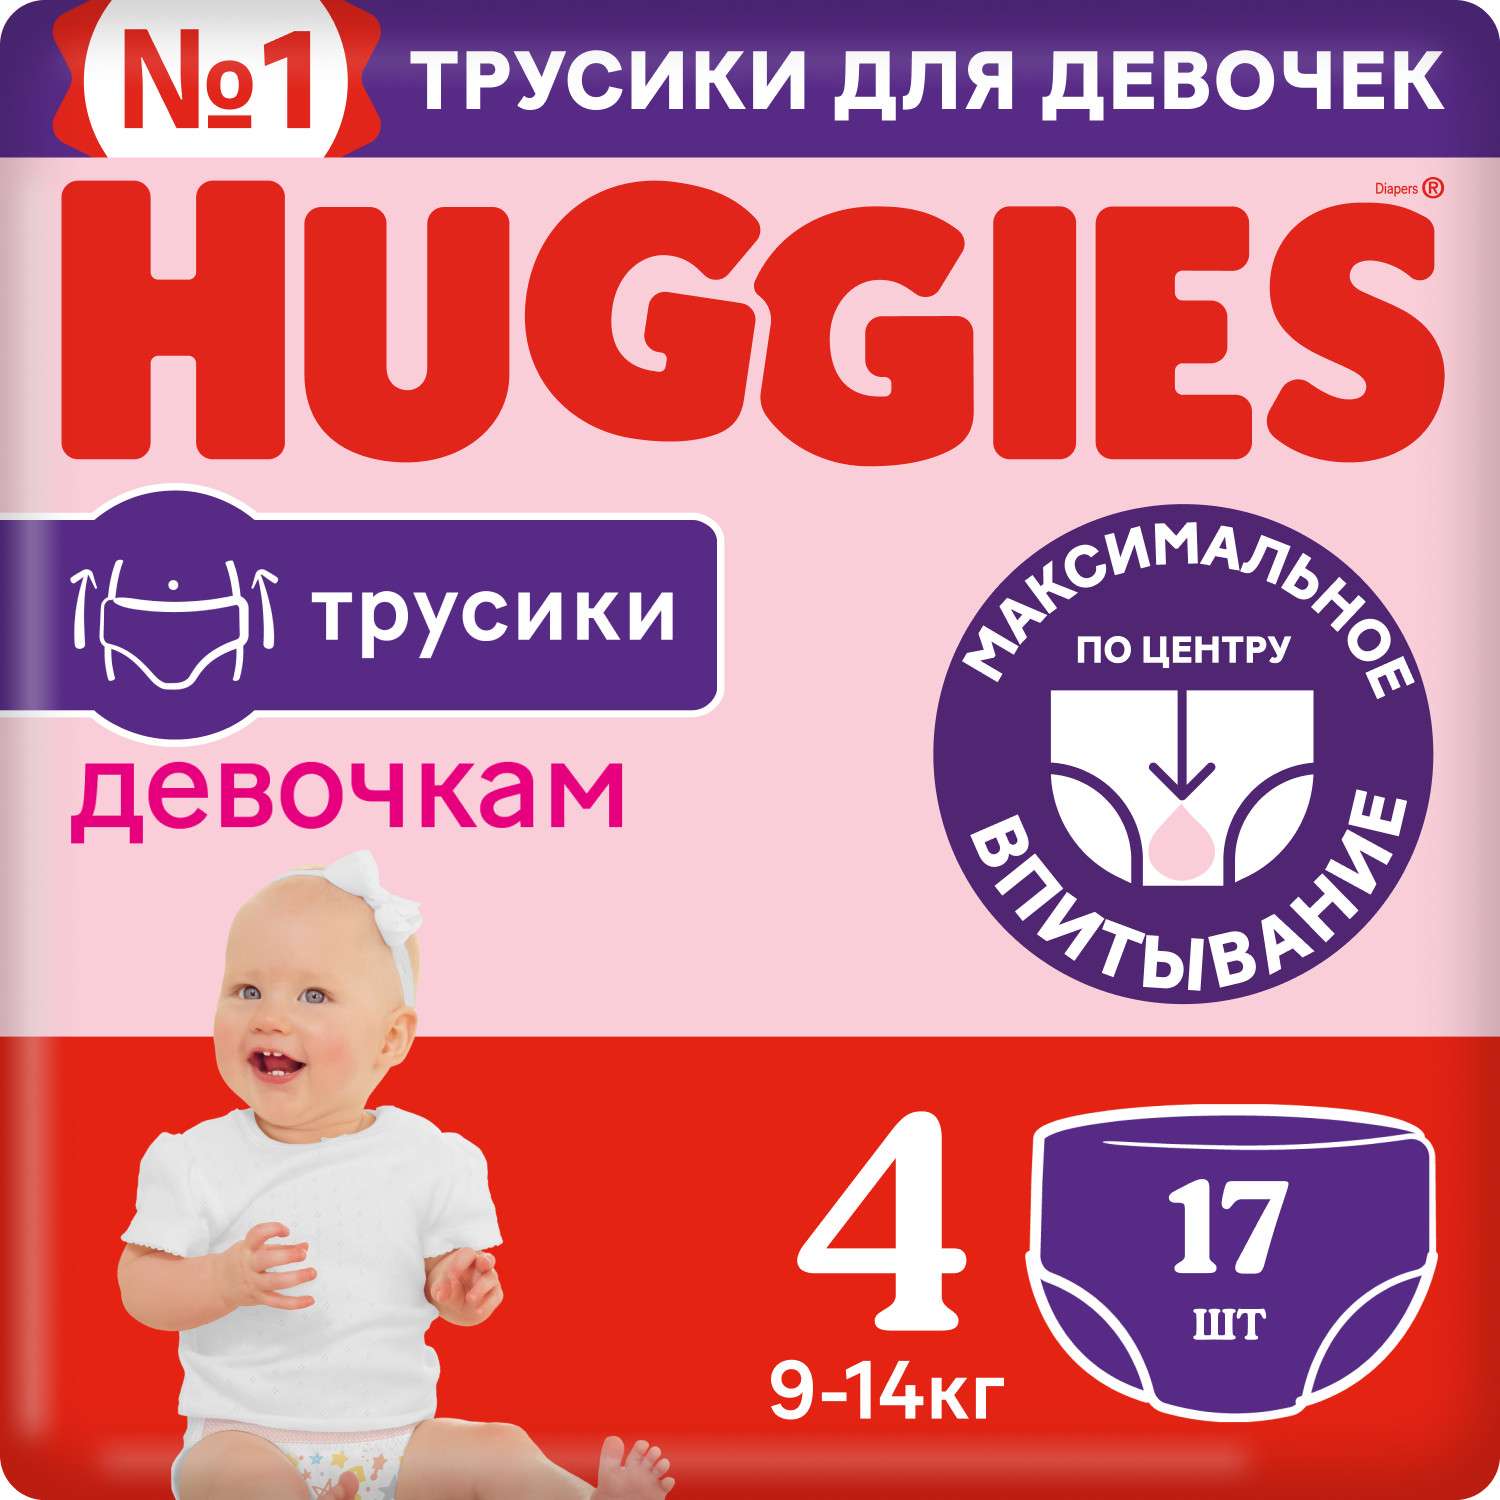 Подгузники-трусики для девочек Huggies 4 9-14кг 17шт - фото 2